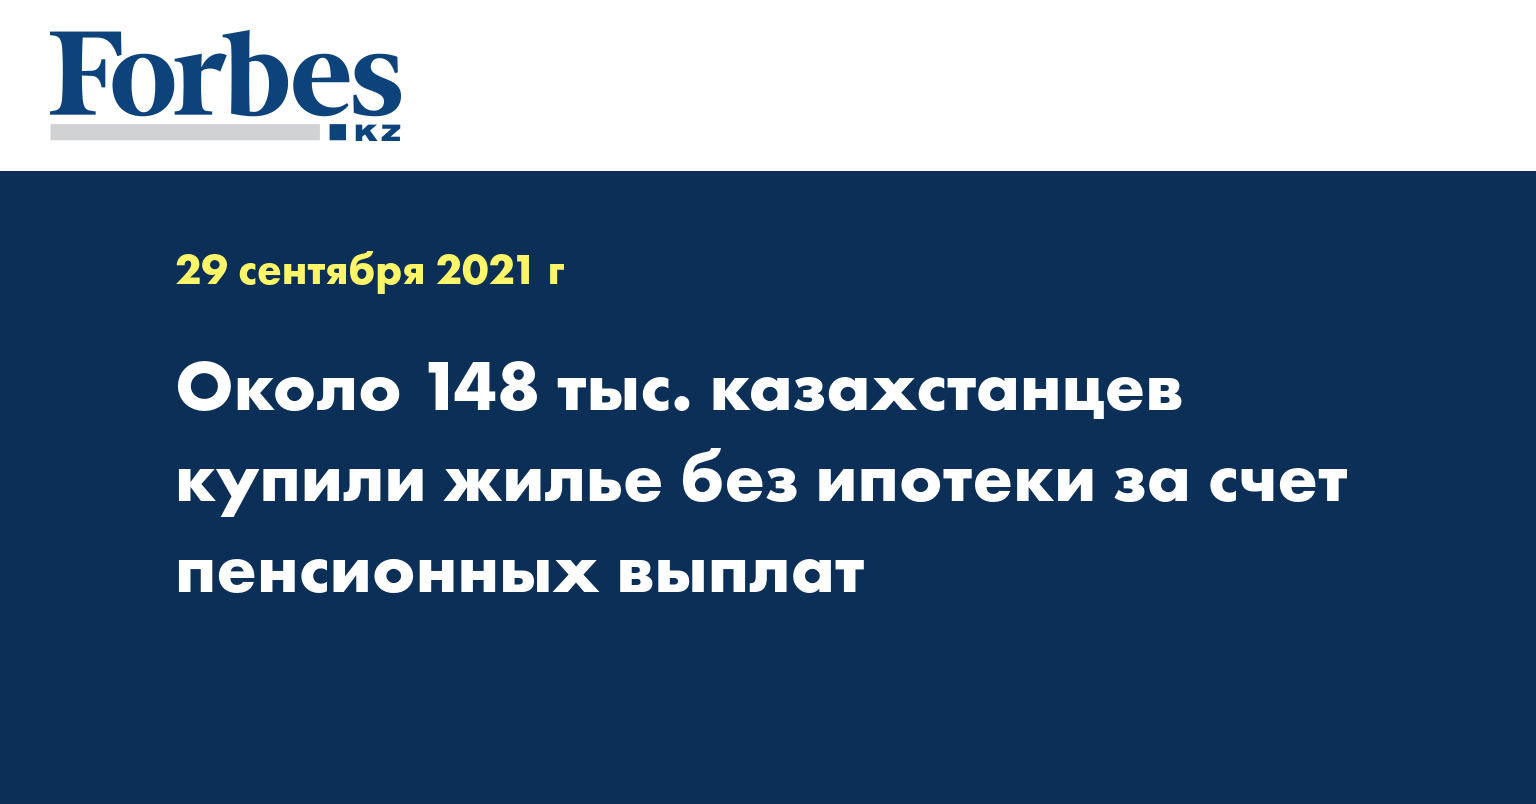 Около 148 тыс. казахстанцев купили жилье без ипотеки за счет пенсионных выплат